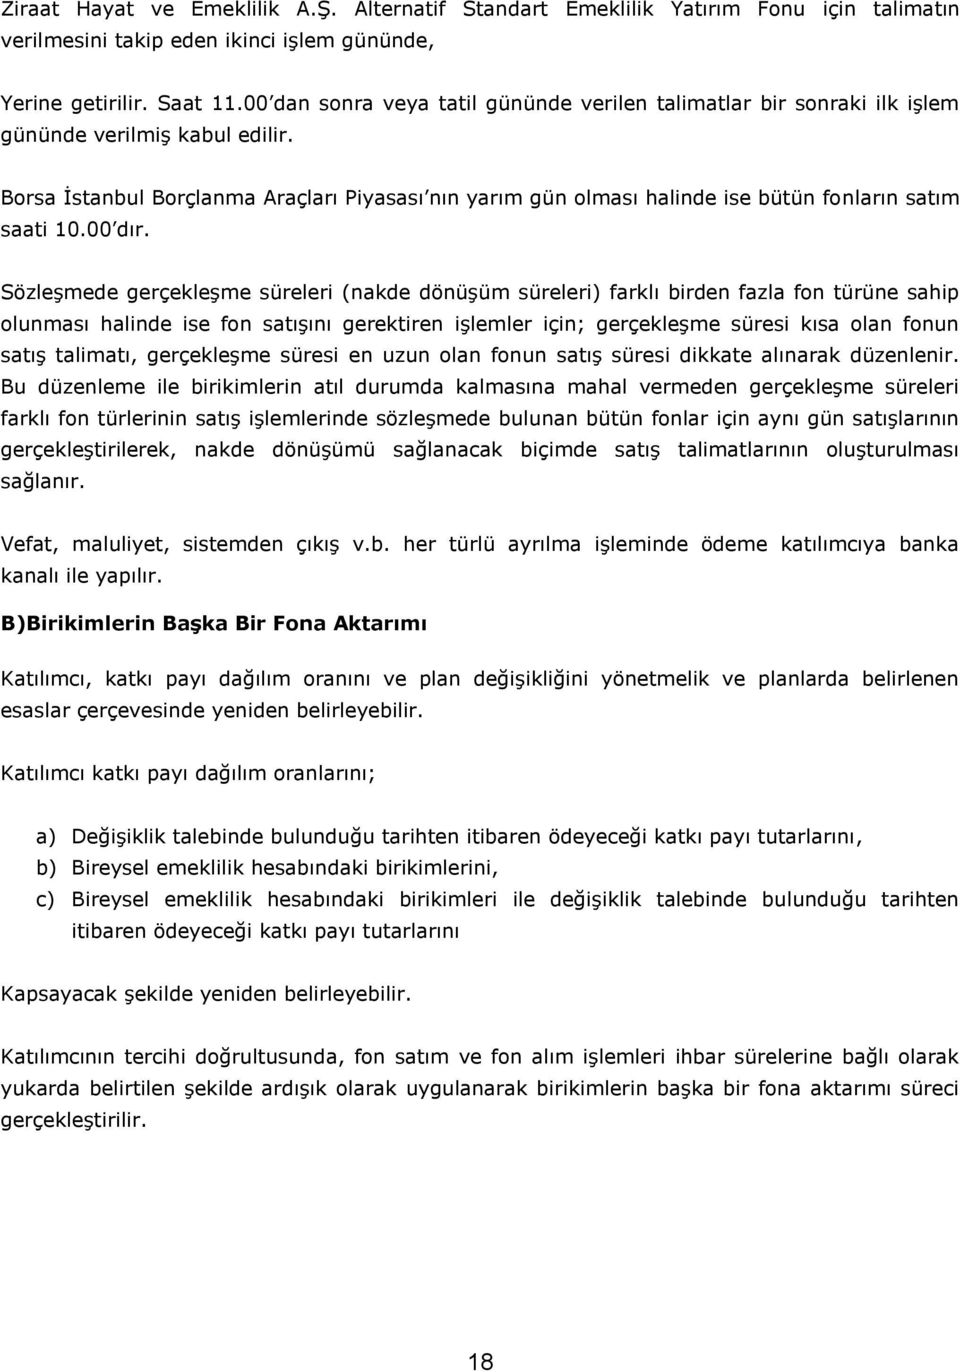 Borsa İstanbul Borçlanma Araçları Piyasası nın yarım gün olması halinde ise bütün fonların satım saati 10.00 dır.